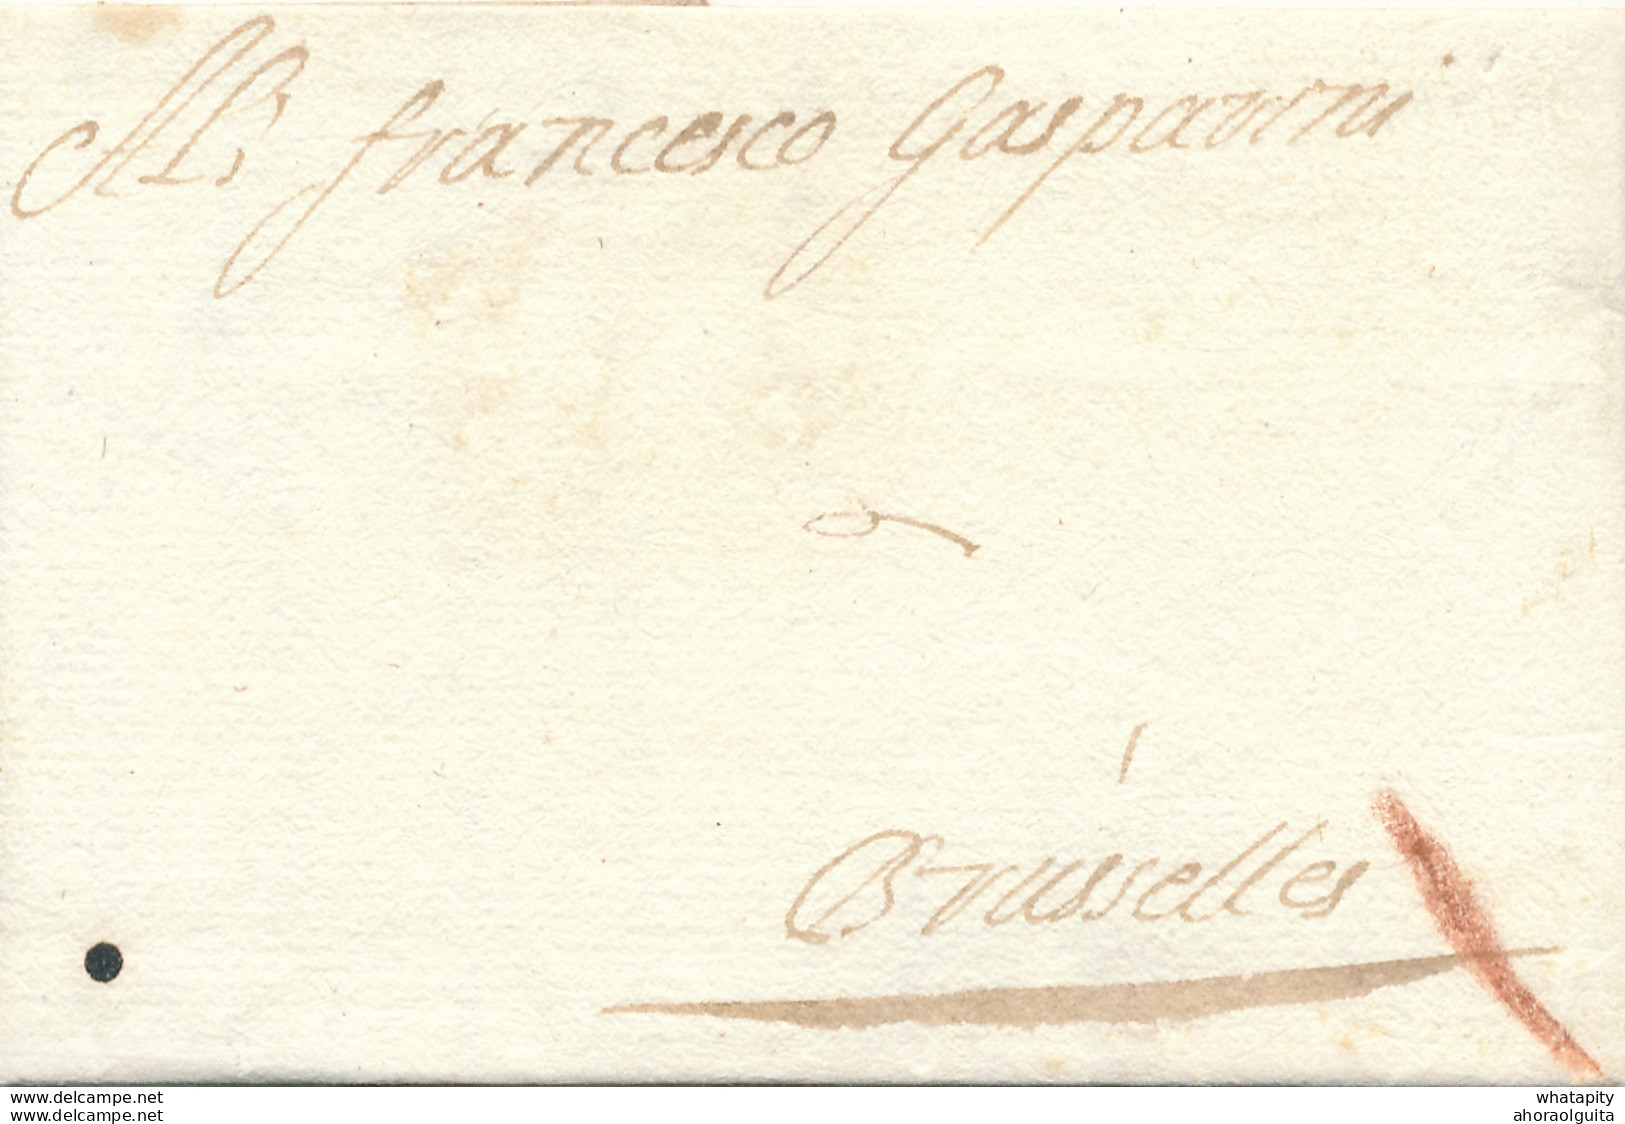 759/29 - Lettre Précurseur 1700 ANTWERPEN Vers BRUXELLES - Marque Oblique à La Craie ( Transport Par Messager ) - 1621-1713 (Spanische Niederlande)